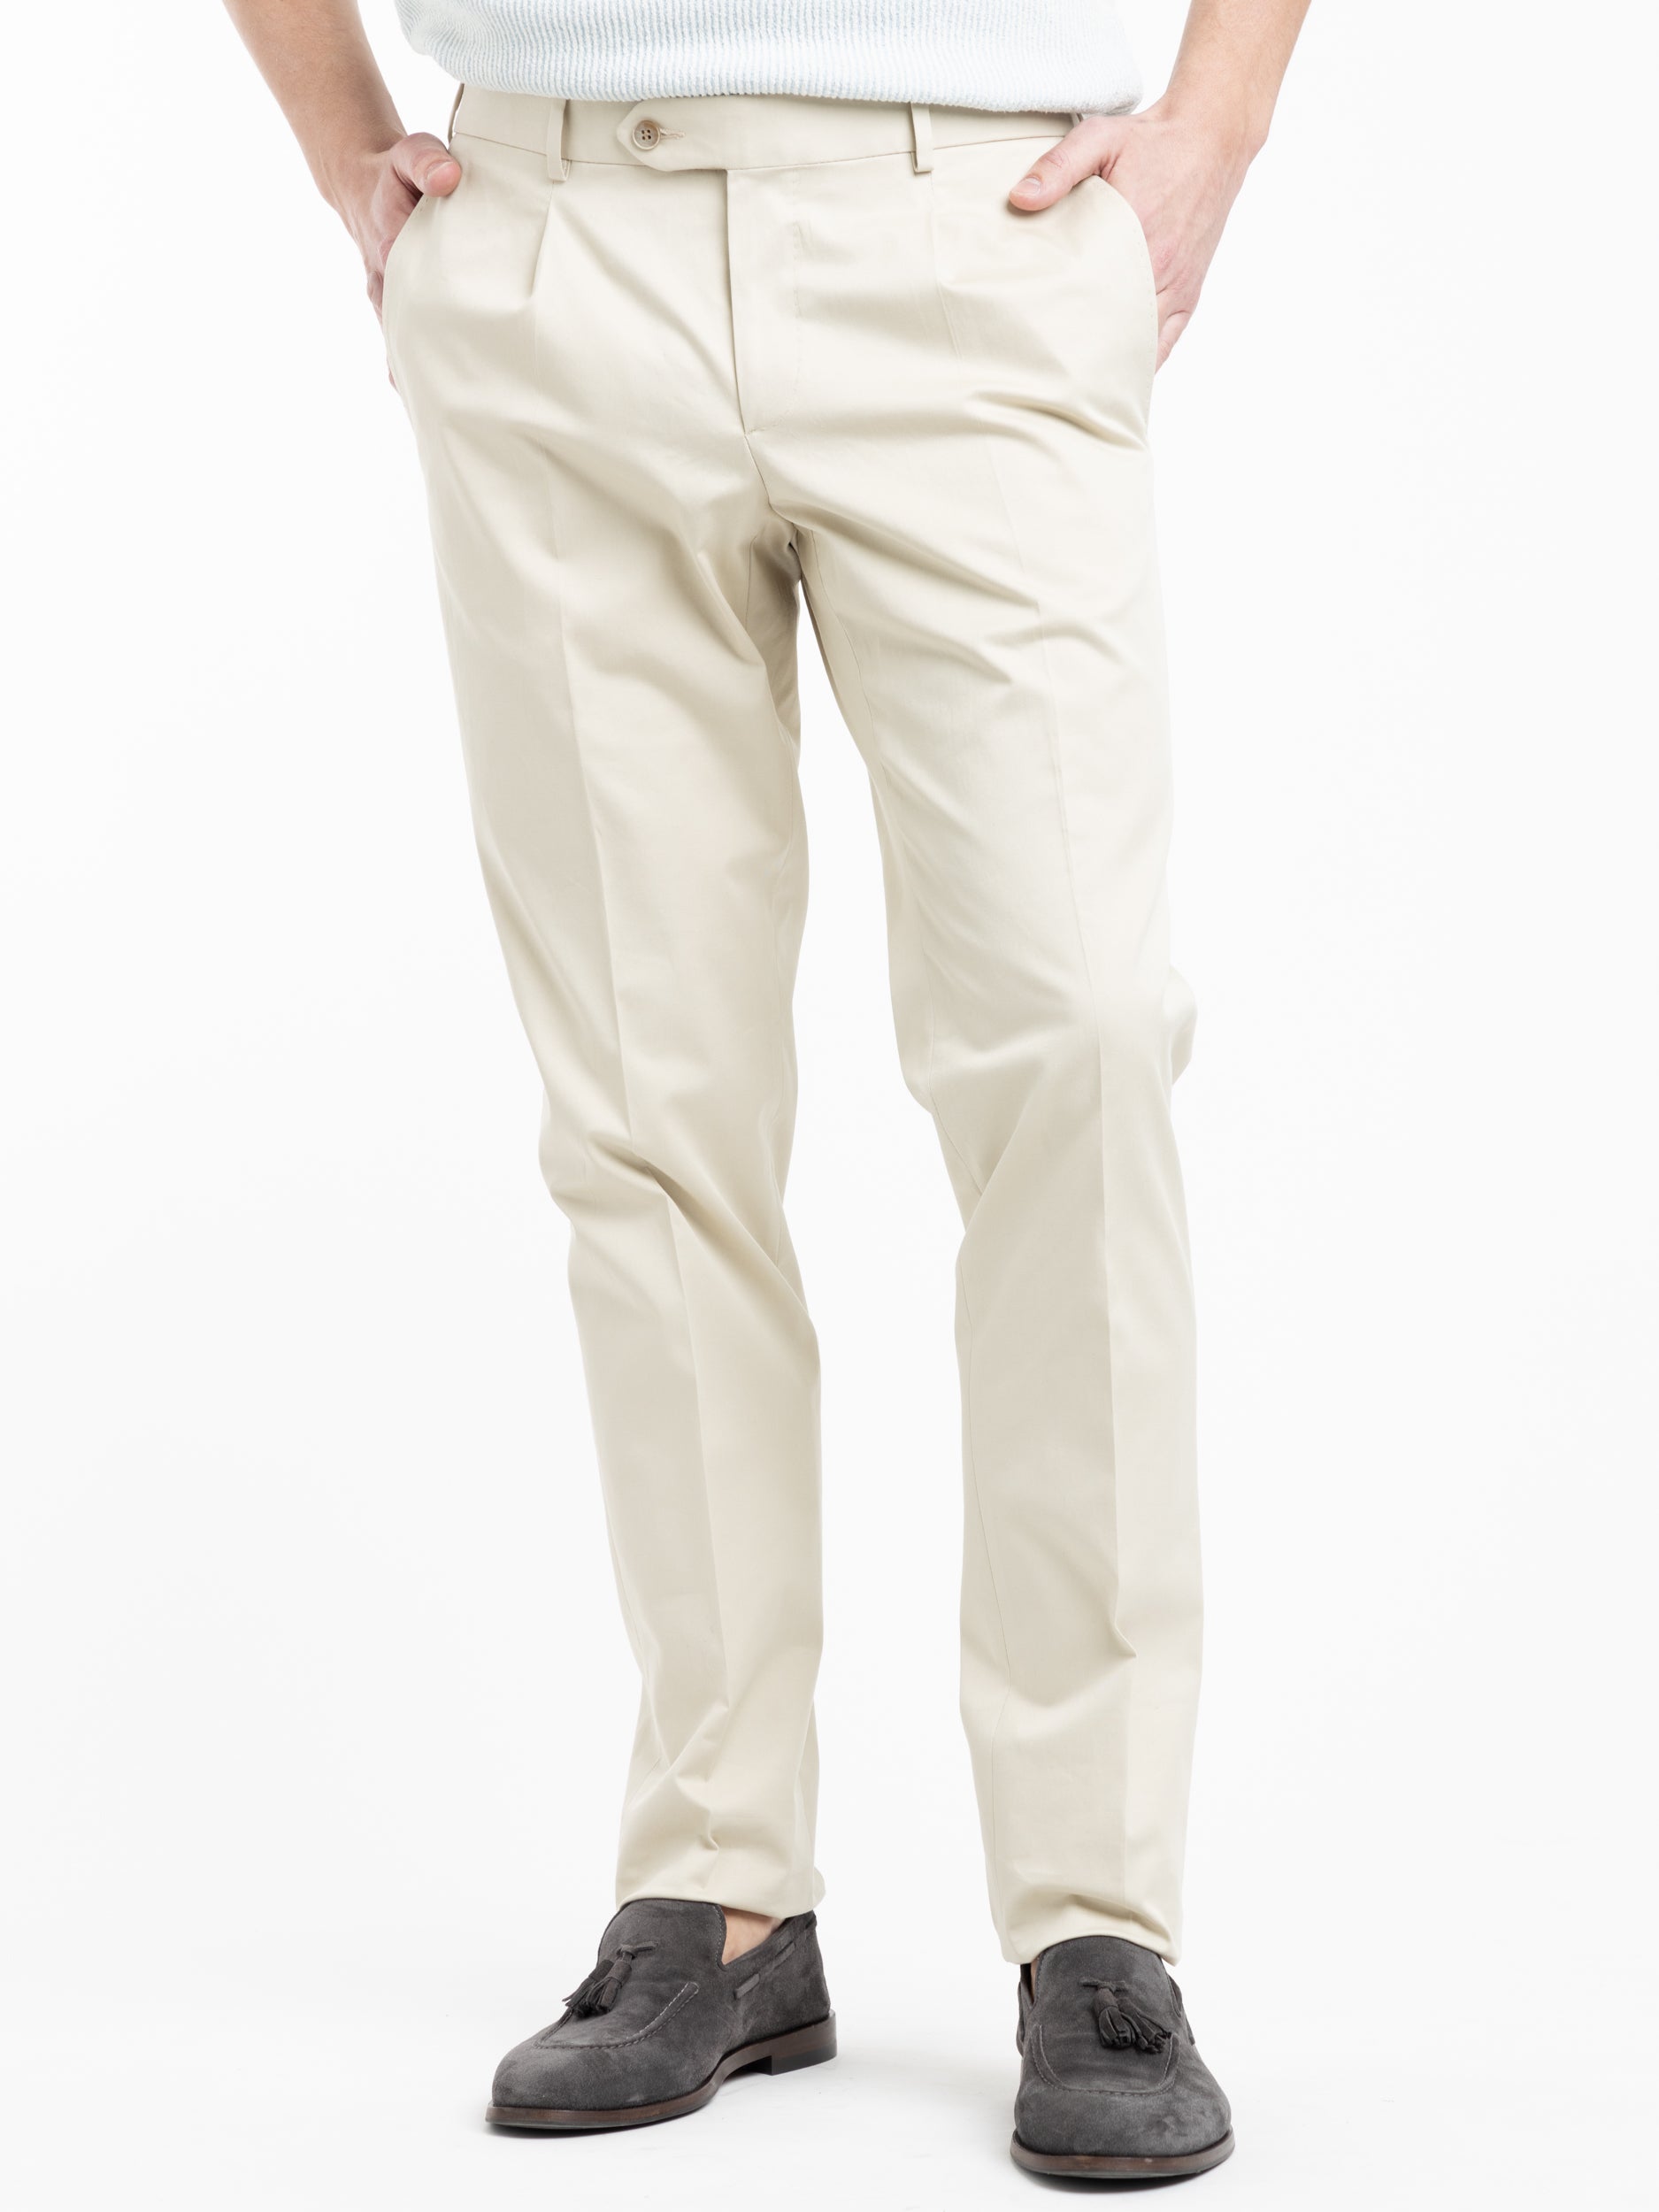 Moose Men's Chino Pants Trousers 98% Cotton | eBay